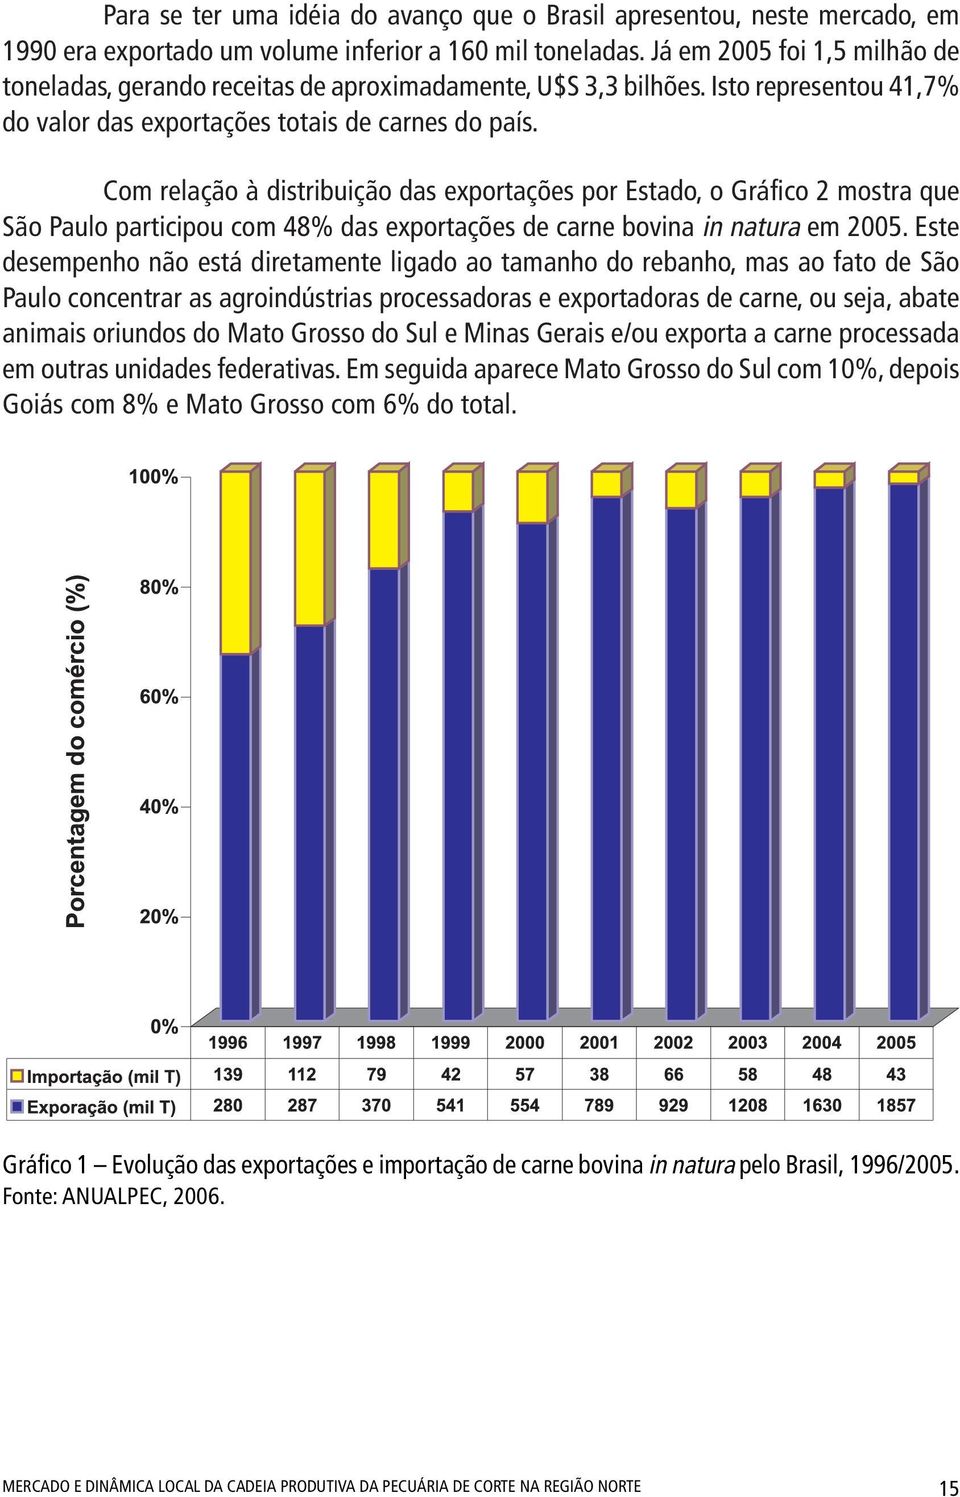 Com relação à distribuição das exportações por Estado, o Gráfico 2 mostra que São Paulo participou com 48% das exportações de carne bovina in natura em 2005.